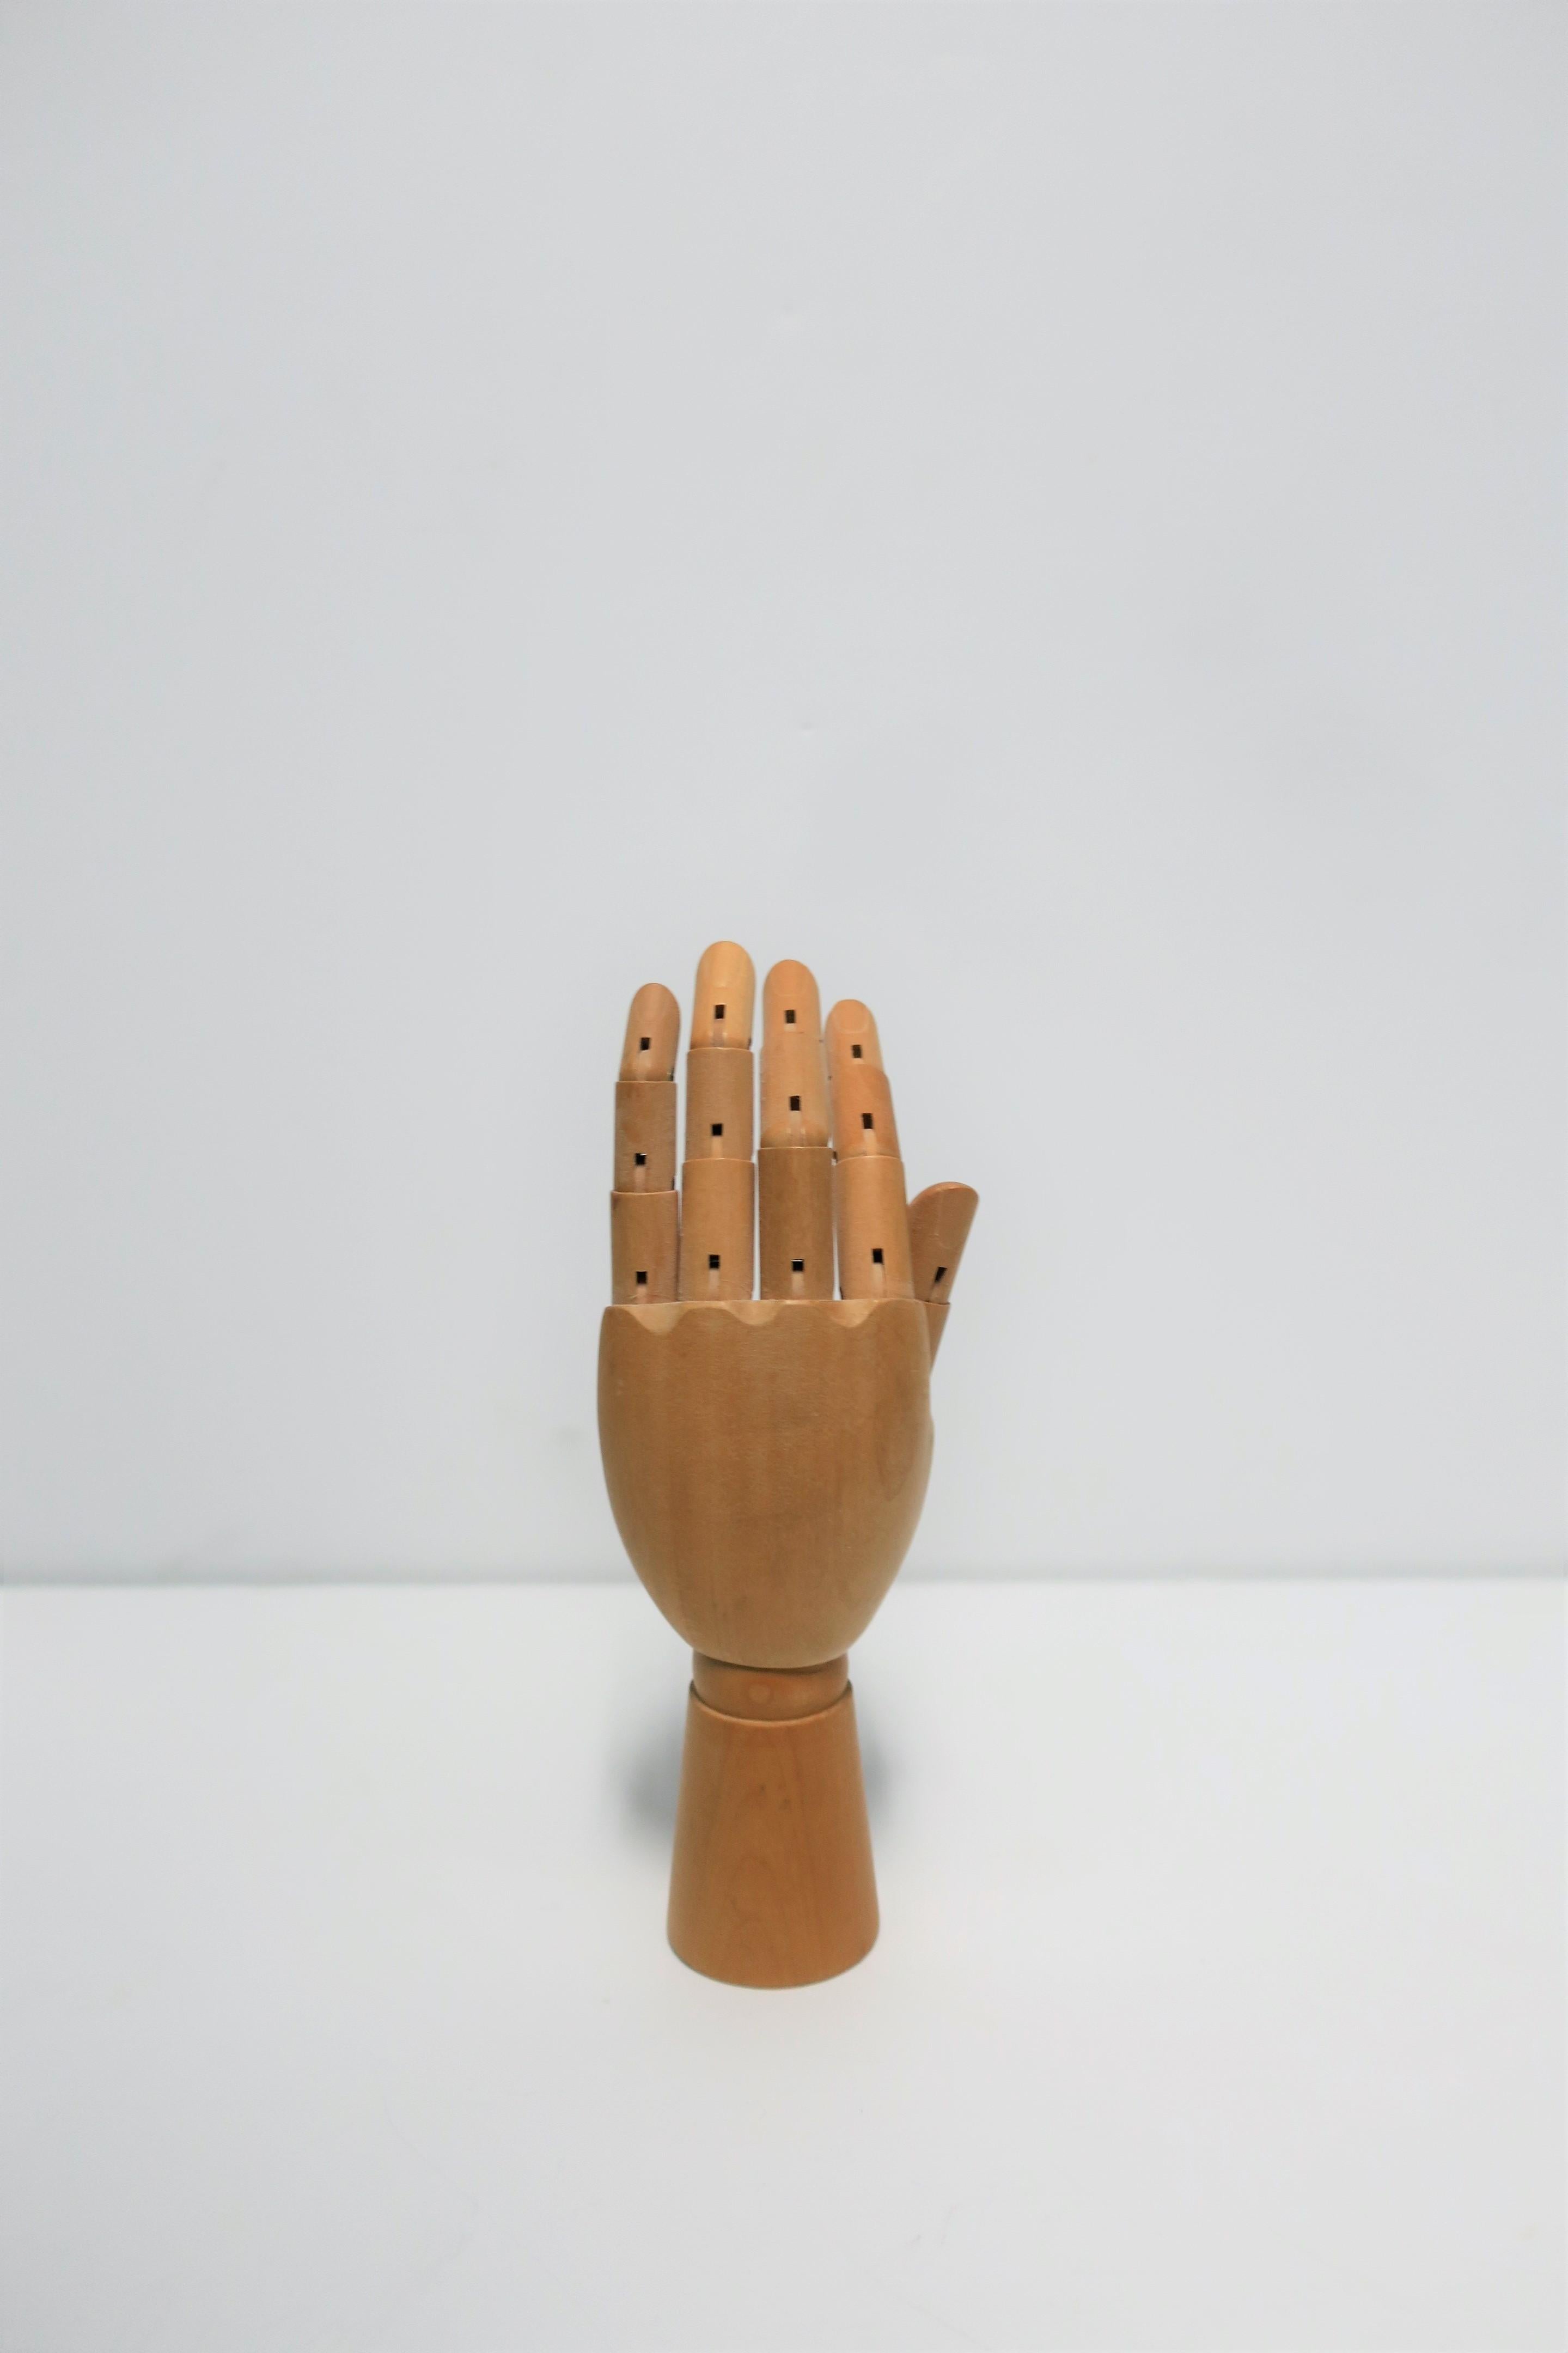 Articulating Wood Hand Sculpture Piece 9